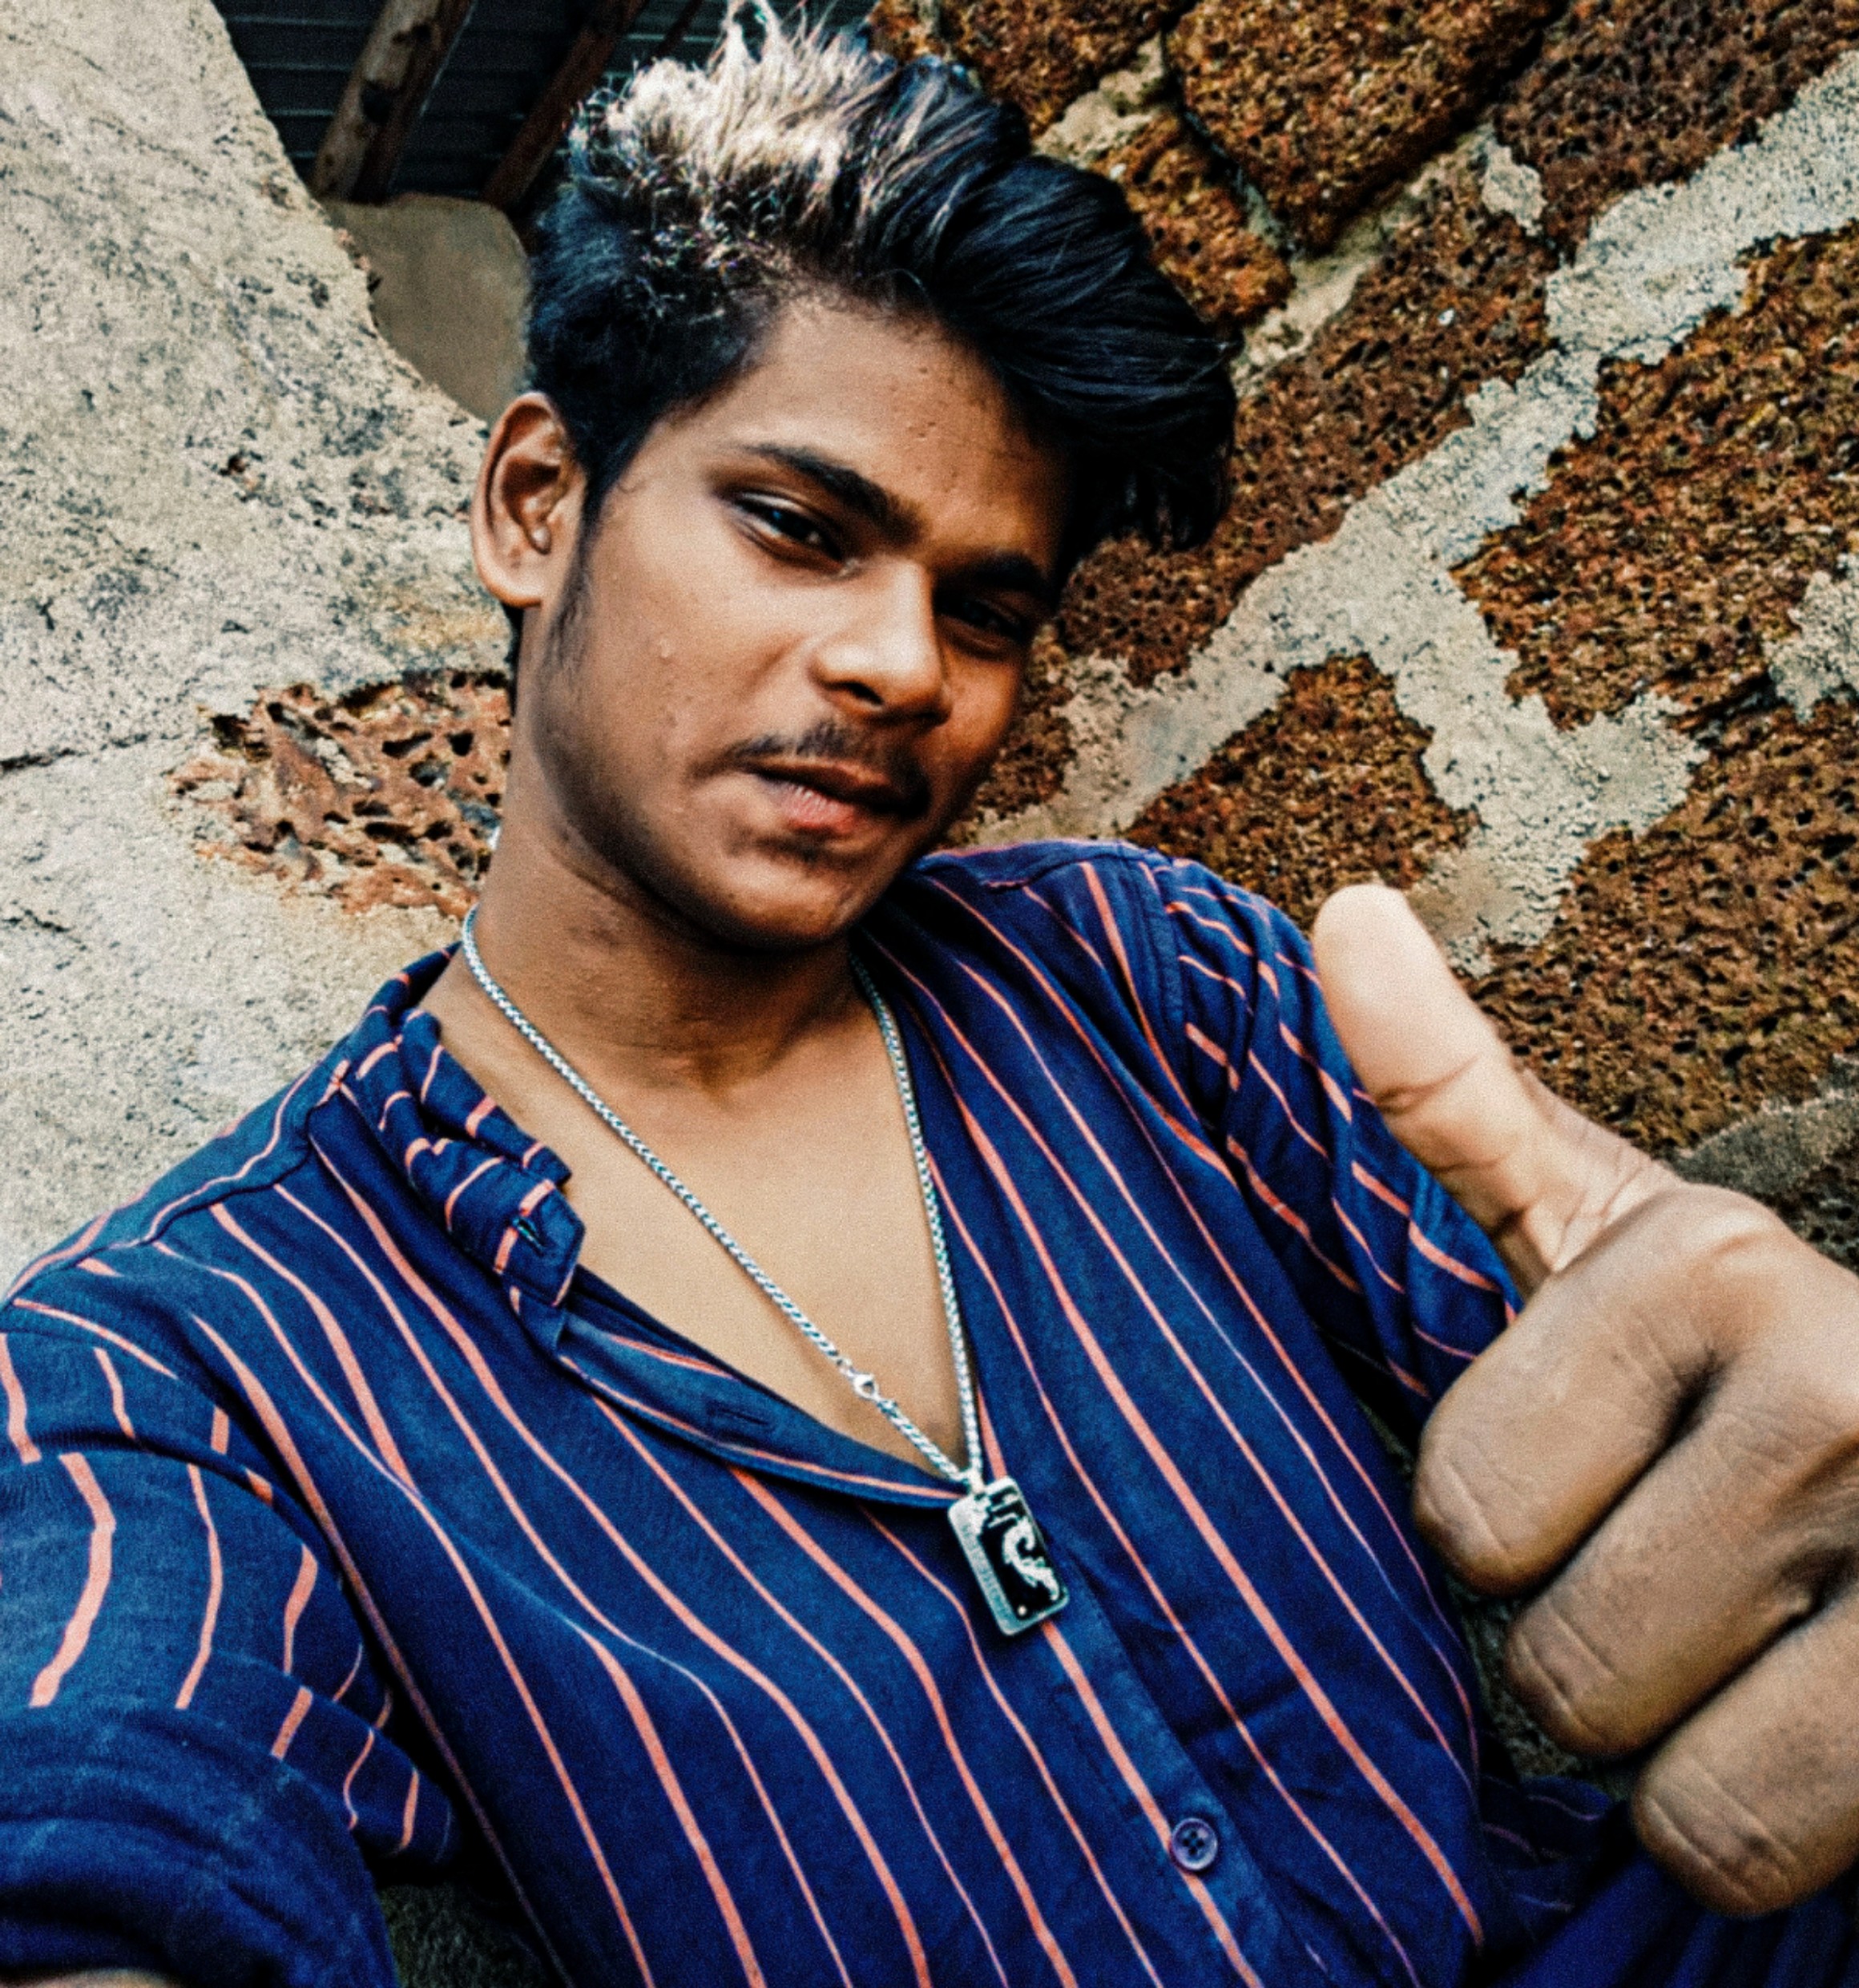 Mangu Kumar Sahoo Selfie Poses Of The Dragon.jpeg